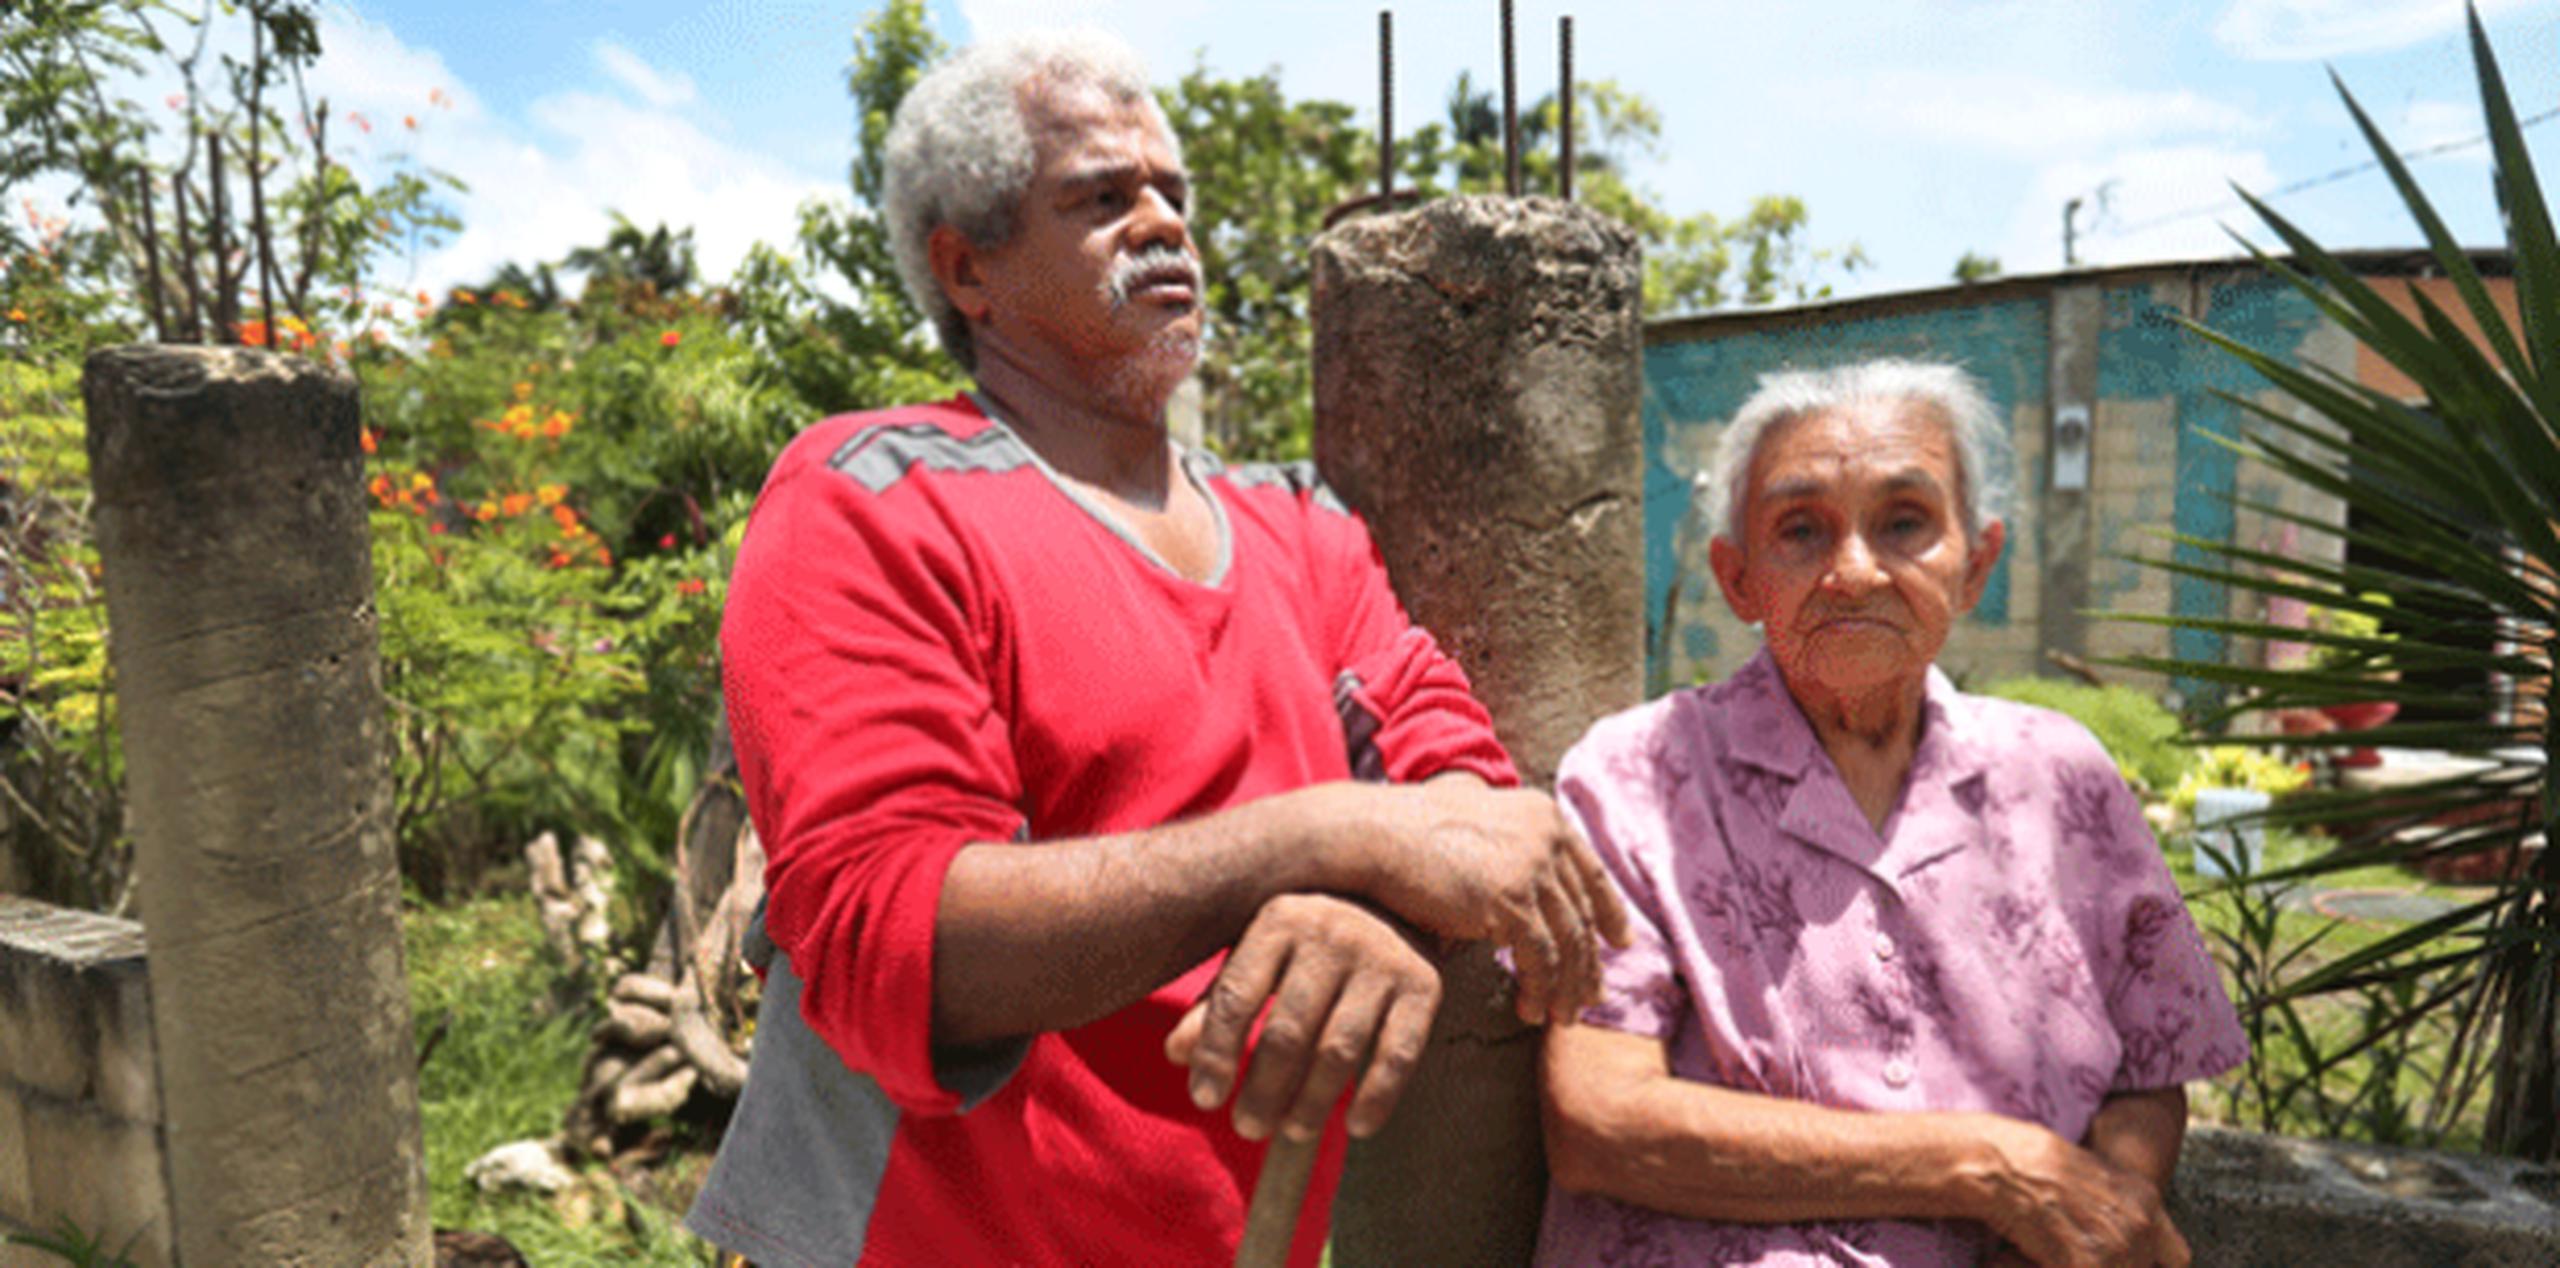 José Negrón y su esposa María Bermúdez lograron salvar sus cositas porque amarraron su techo de zinc con alambres y resistió. (vanessa.serra@gfrmedia.com)
